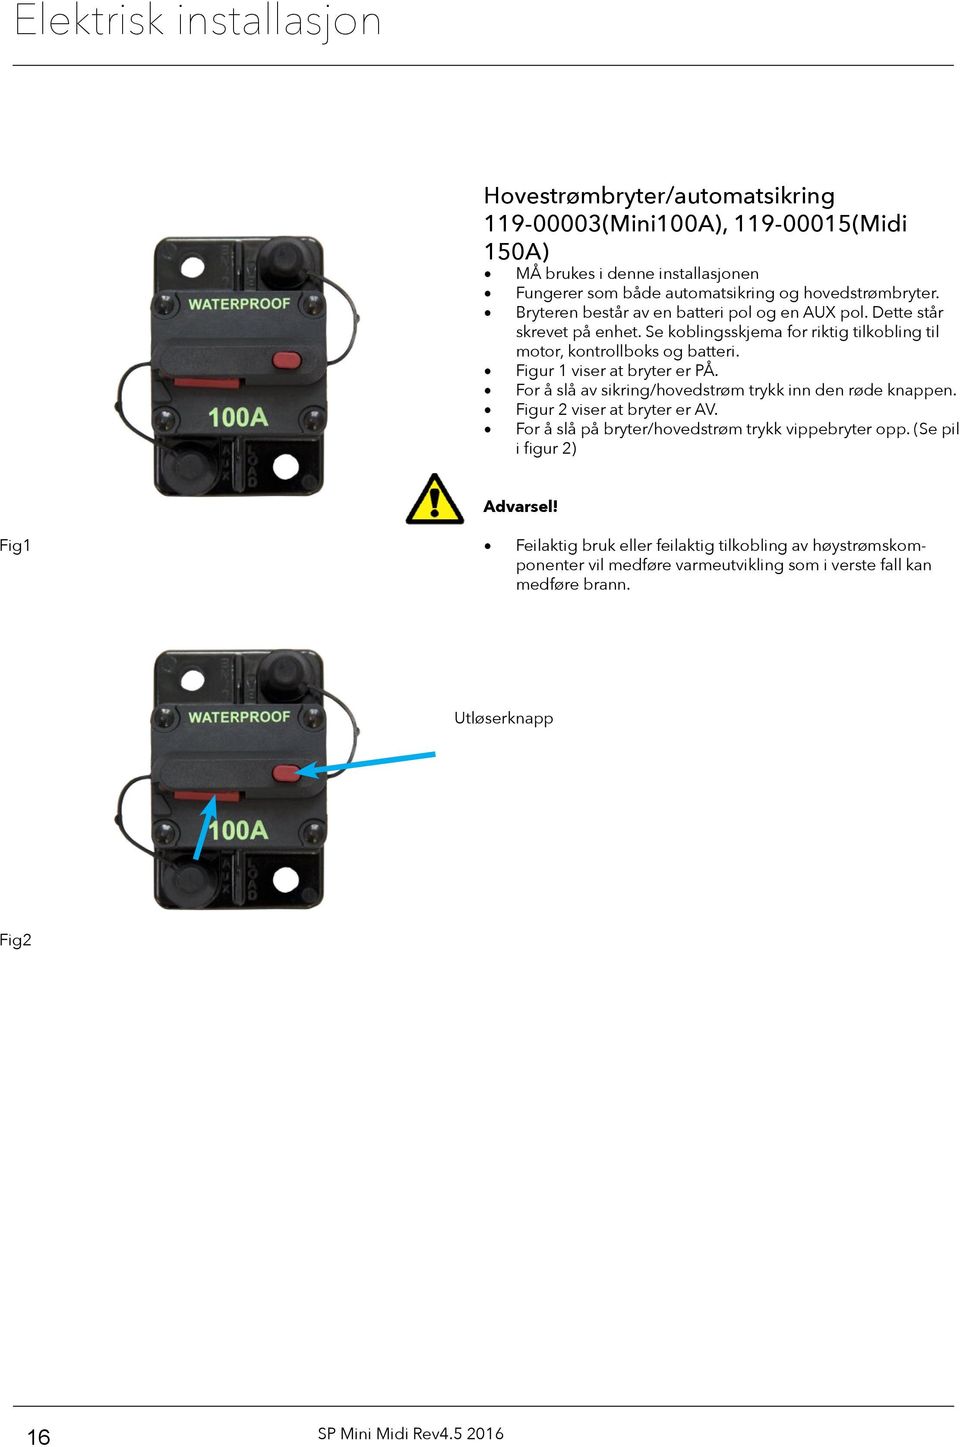 Figur 1 viser at bryter er PÅ. For å slå av sikring/hovedstrøm trykk inn den røde knappen. Figur 2 viser at bryter er AV. For å slå på bryter/hovedstrøm trykk vippebryter opp.